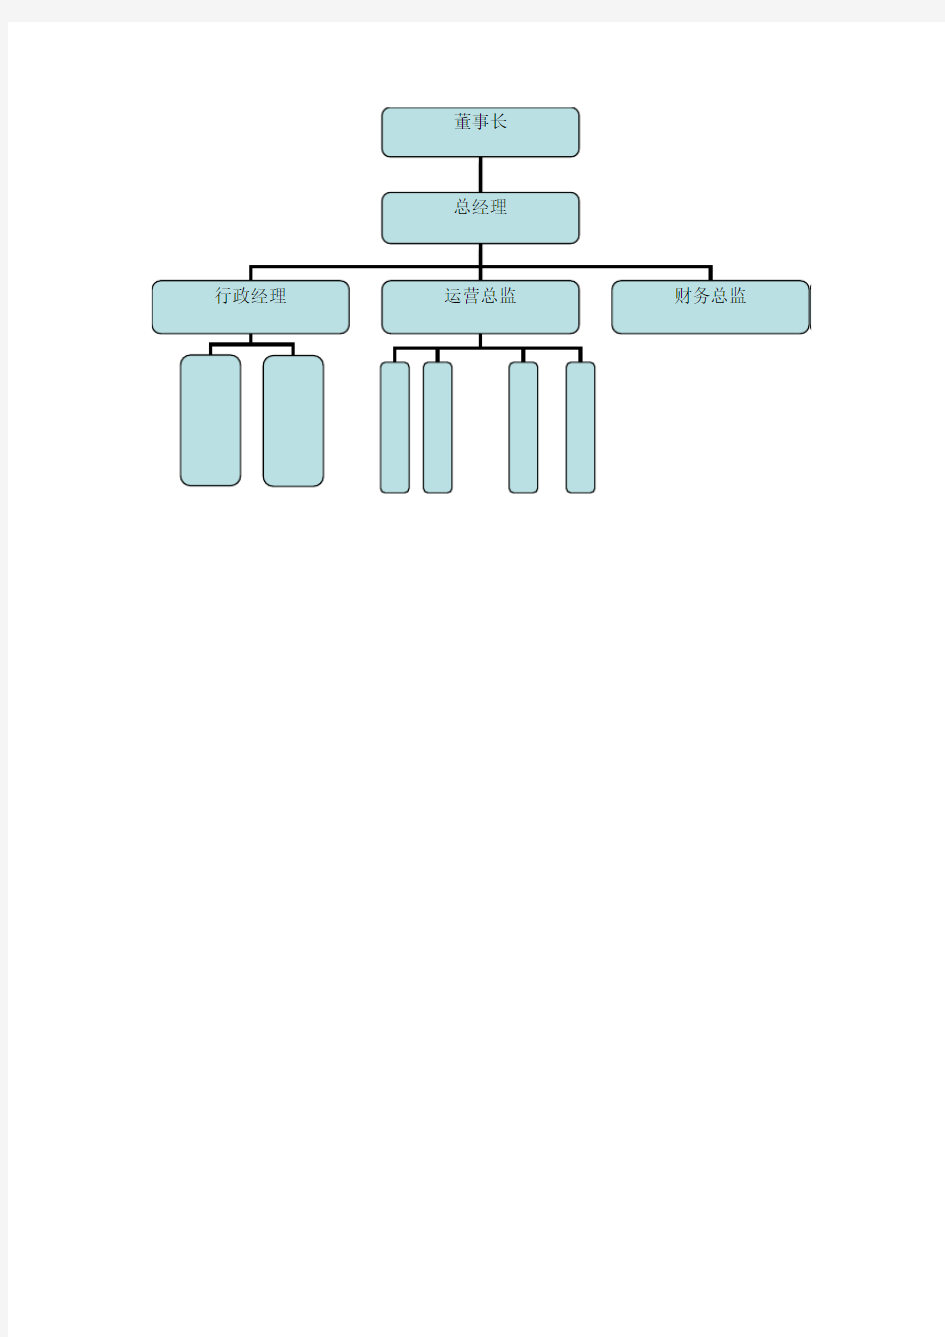 组织架构树形图